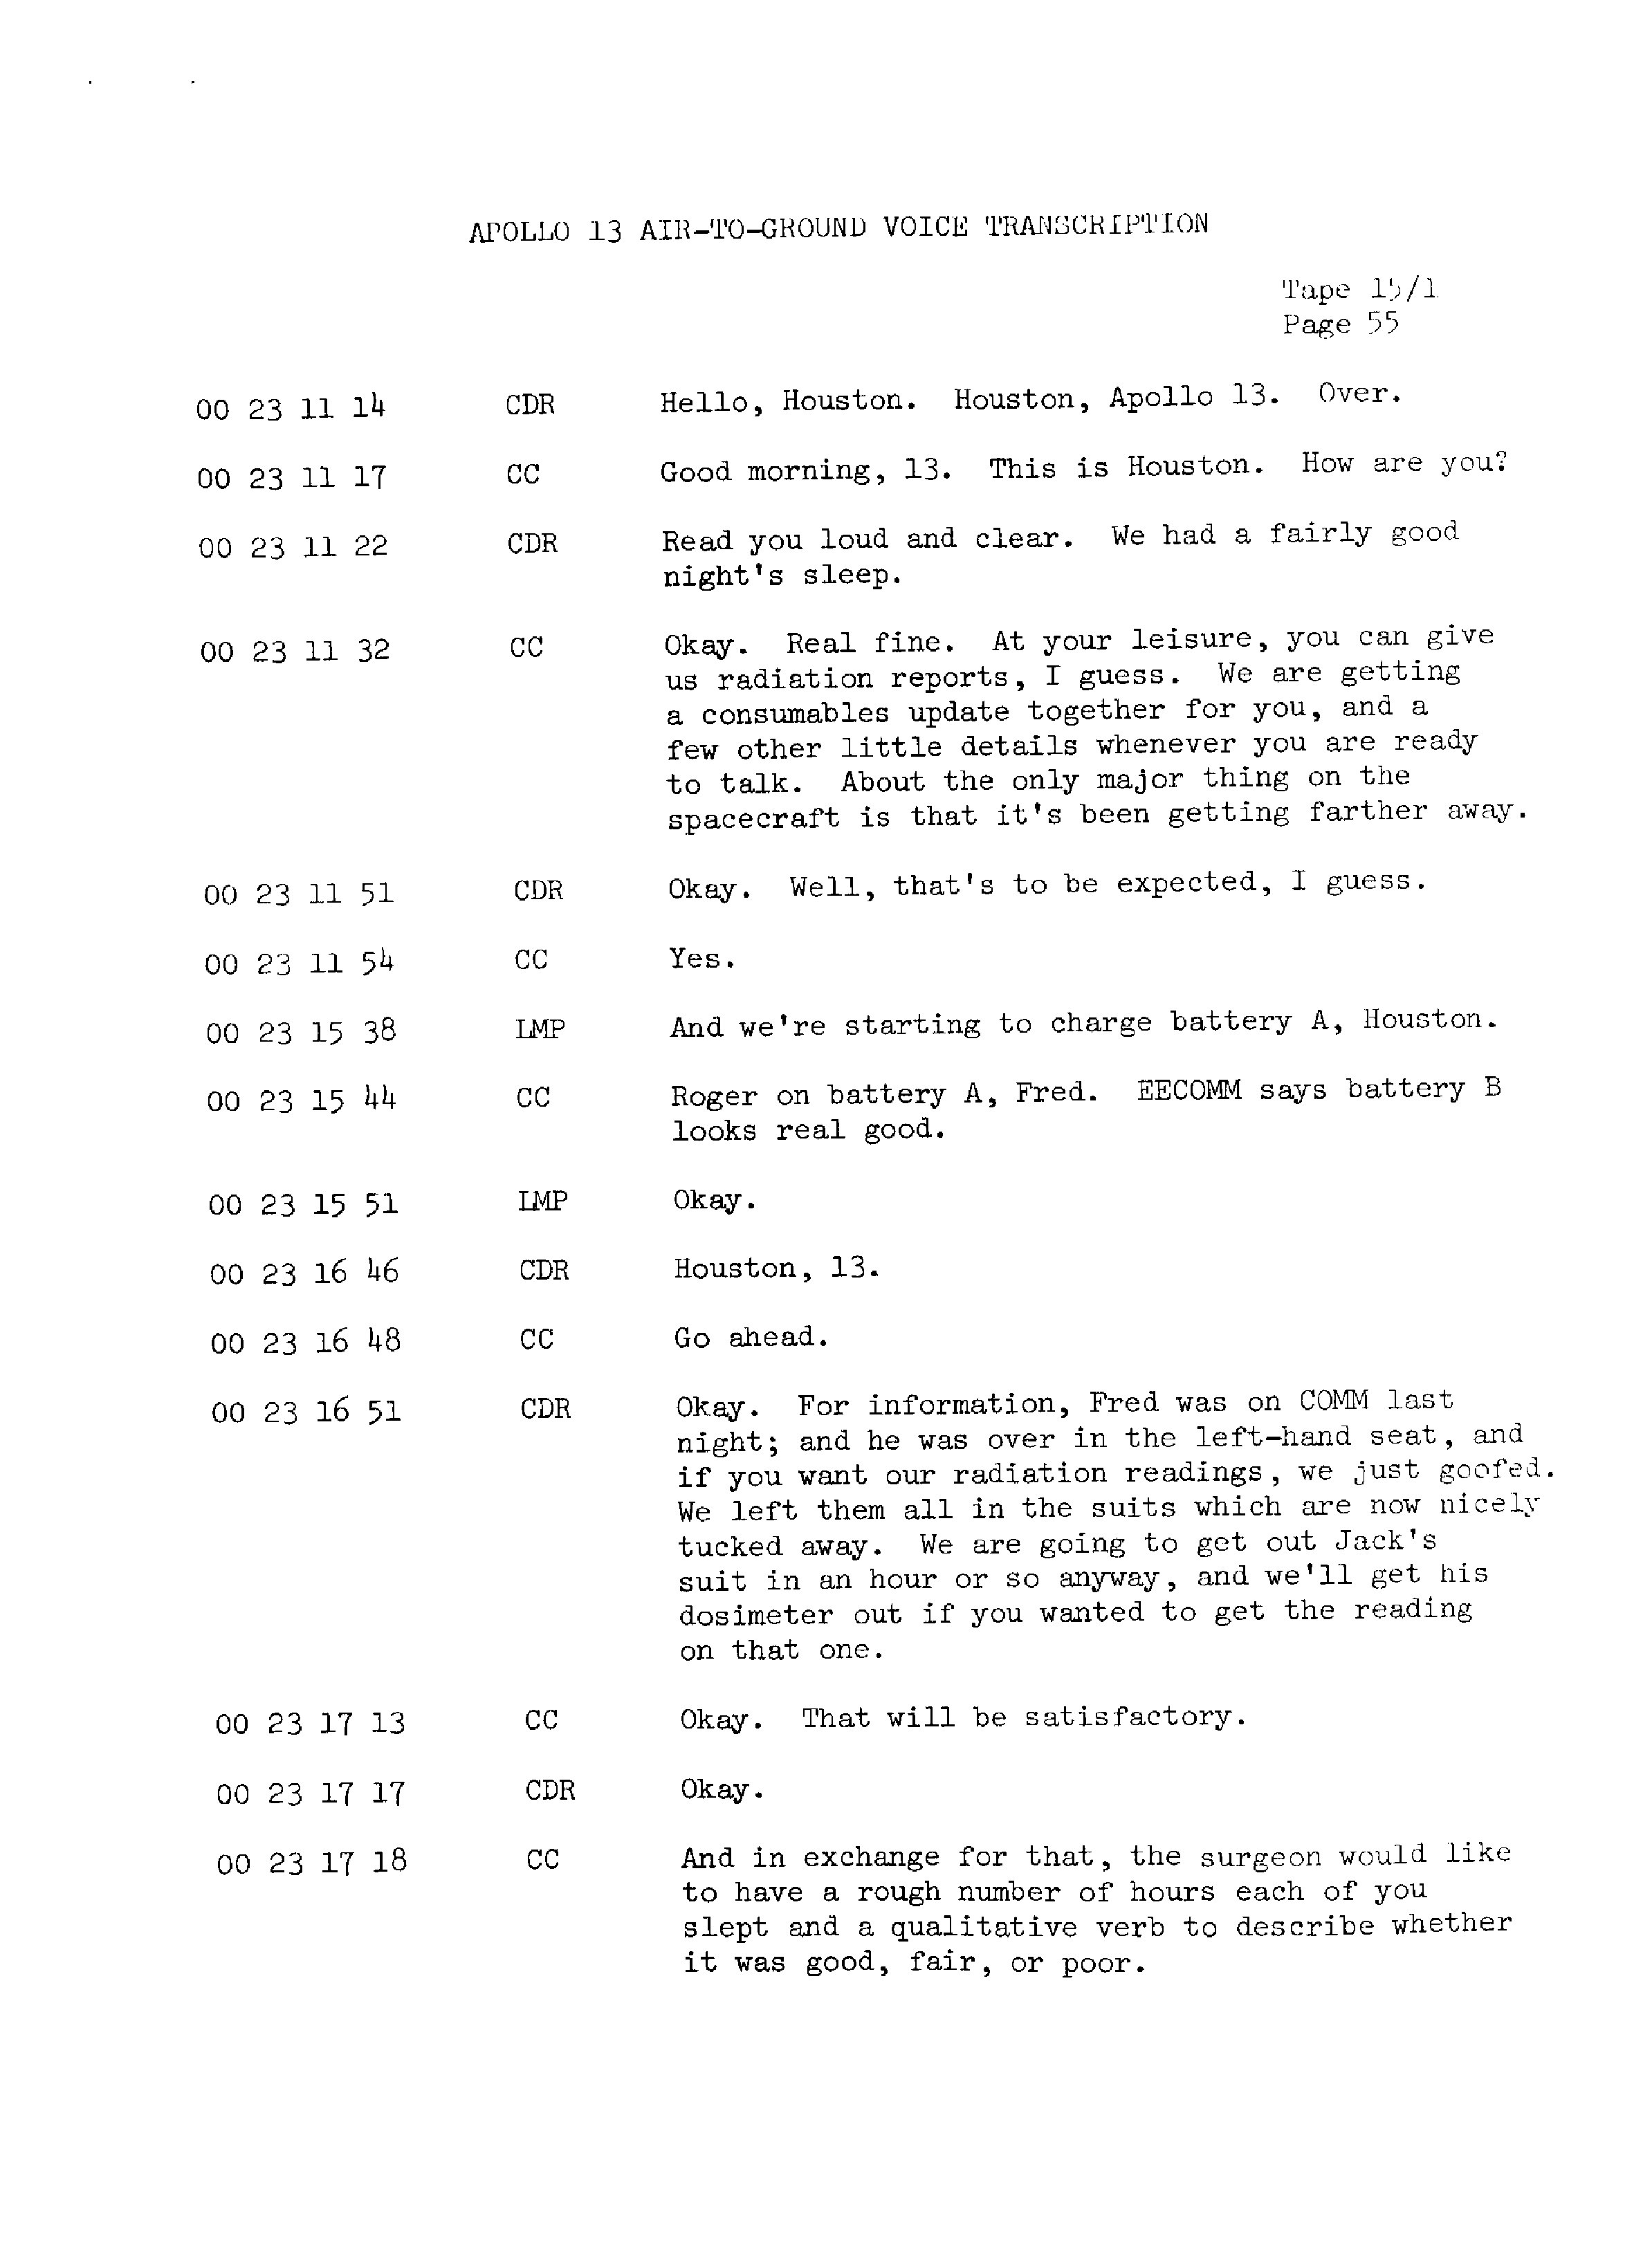 Page 62 of Apollo 13’s original transcript